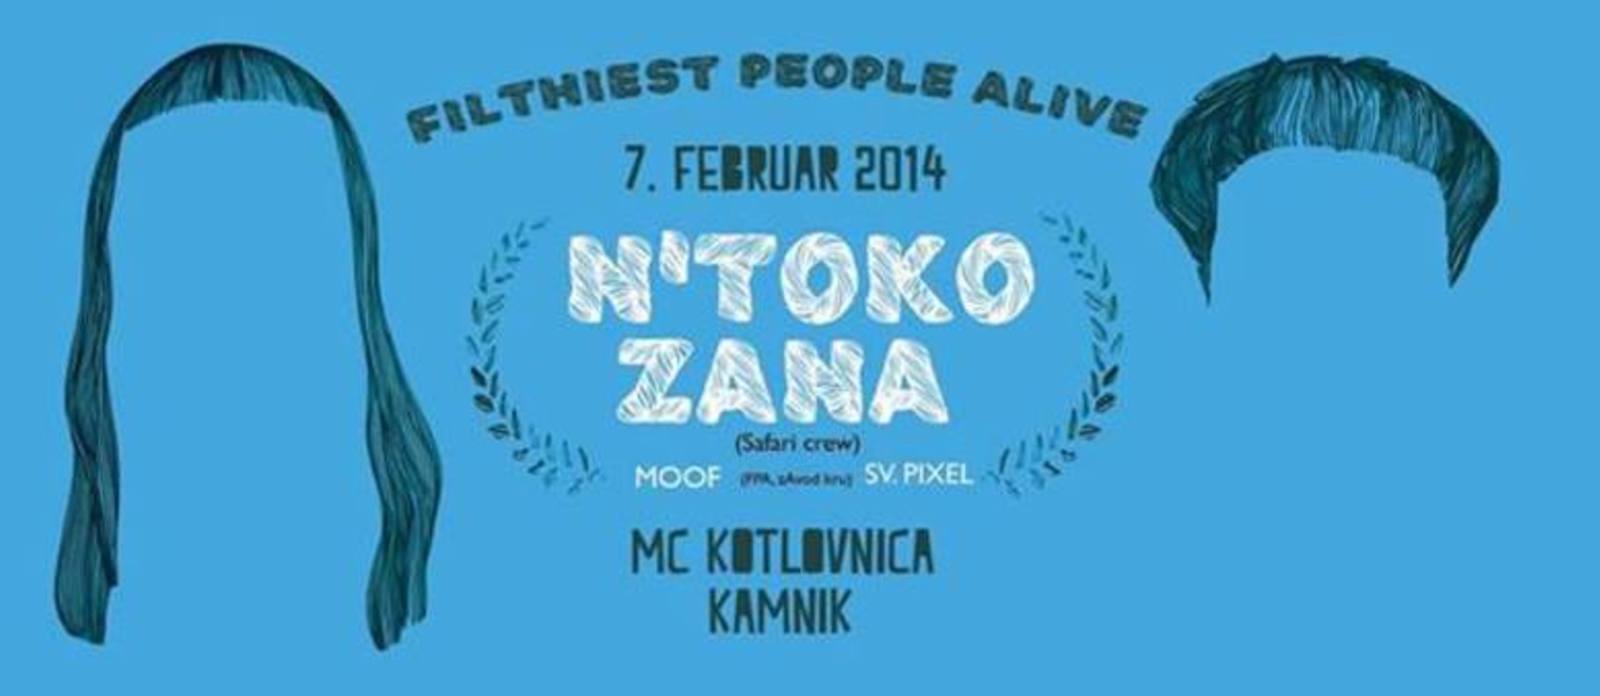 Filthiest People Alive pripročajo: N'toko in Zana